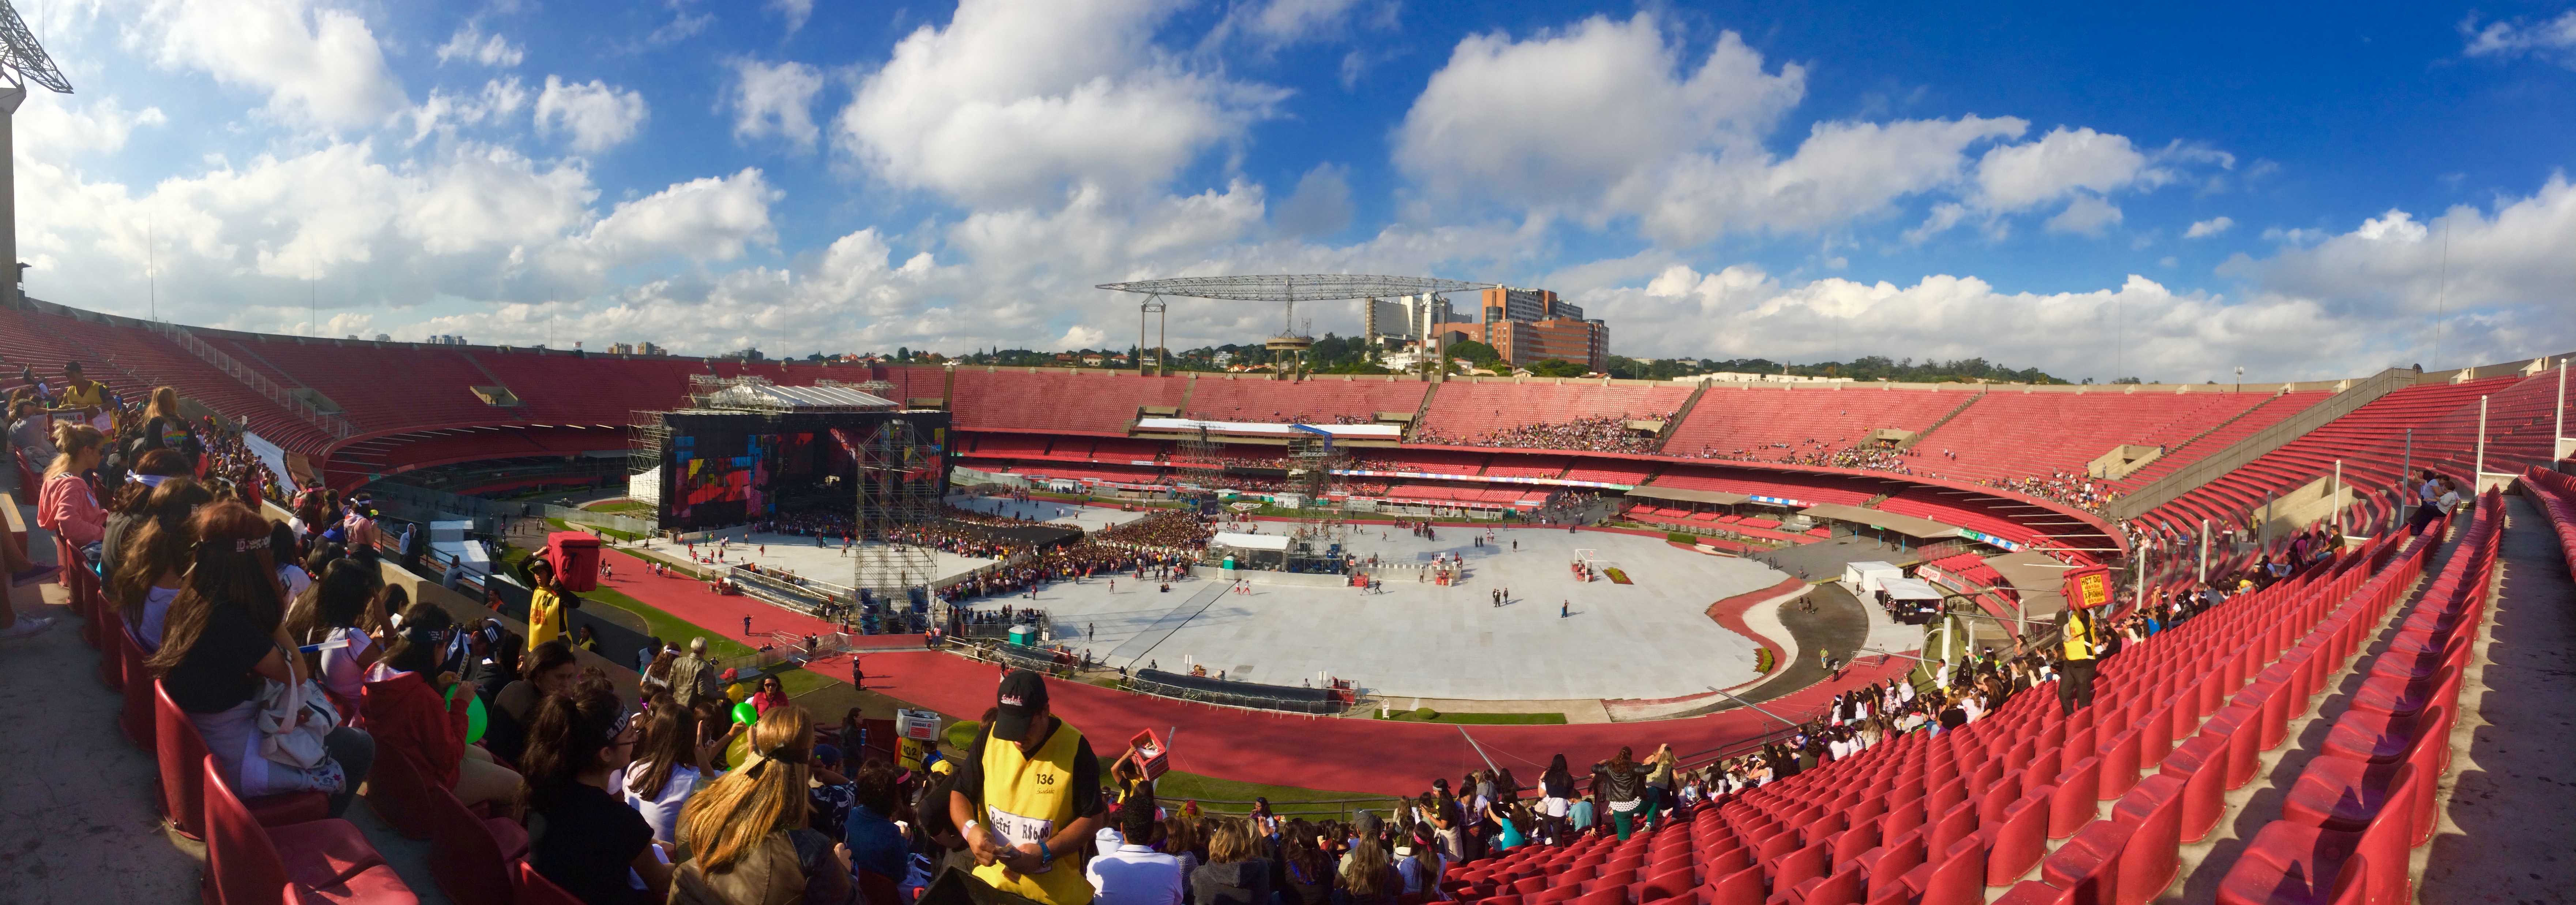 Estádio do Morumbi no dia do show da banda One Direction. Foto: AMF / Blog Tirando Férias